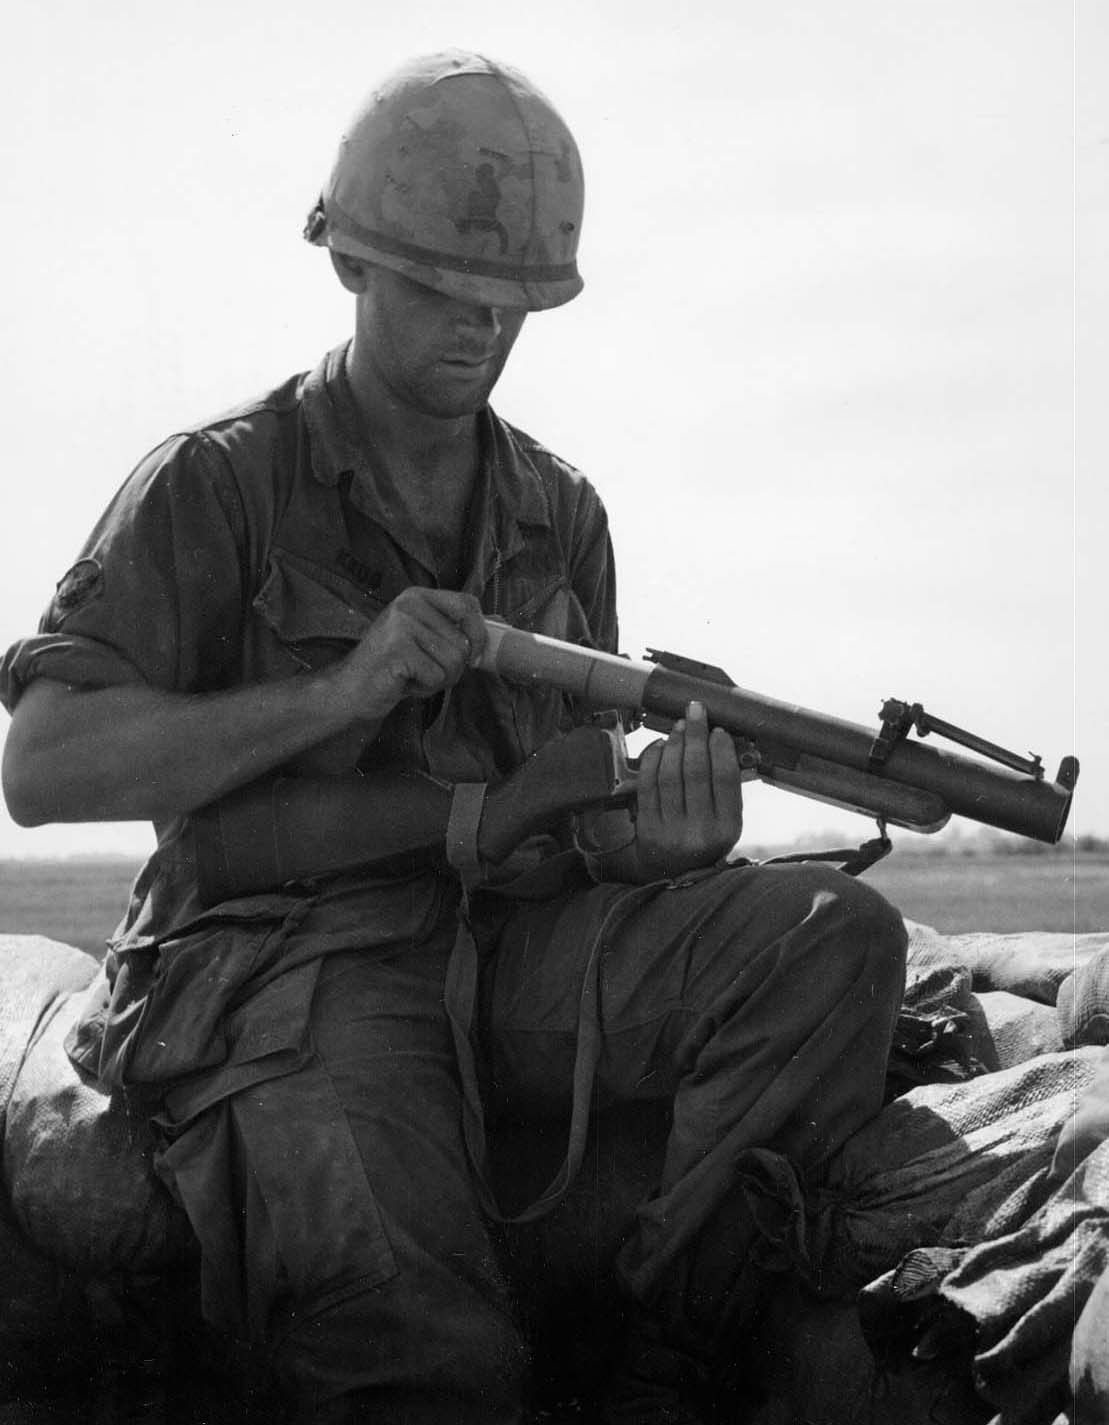 An American Solder in Vietnam